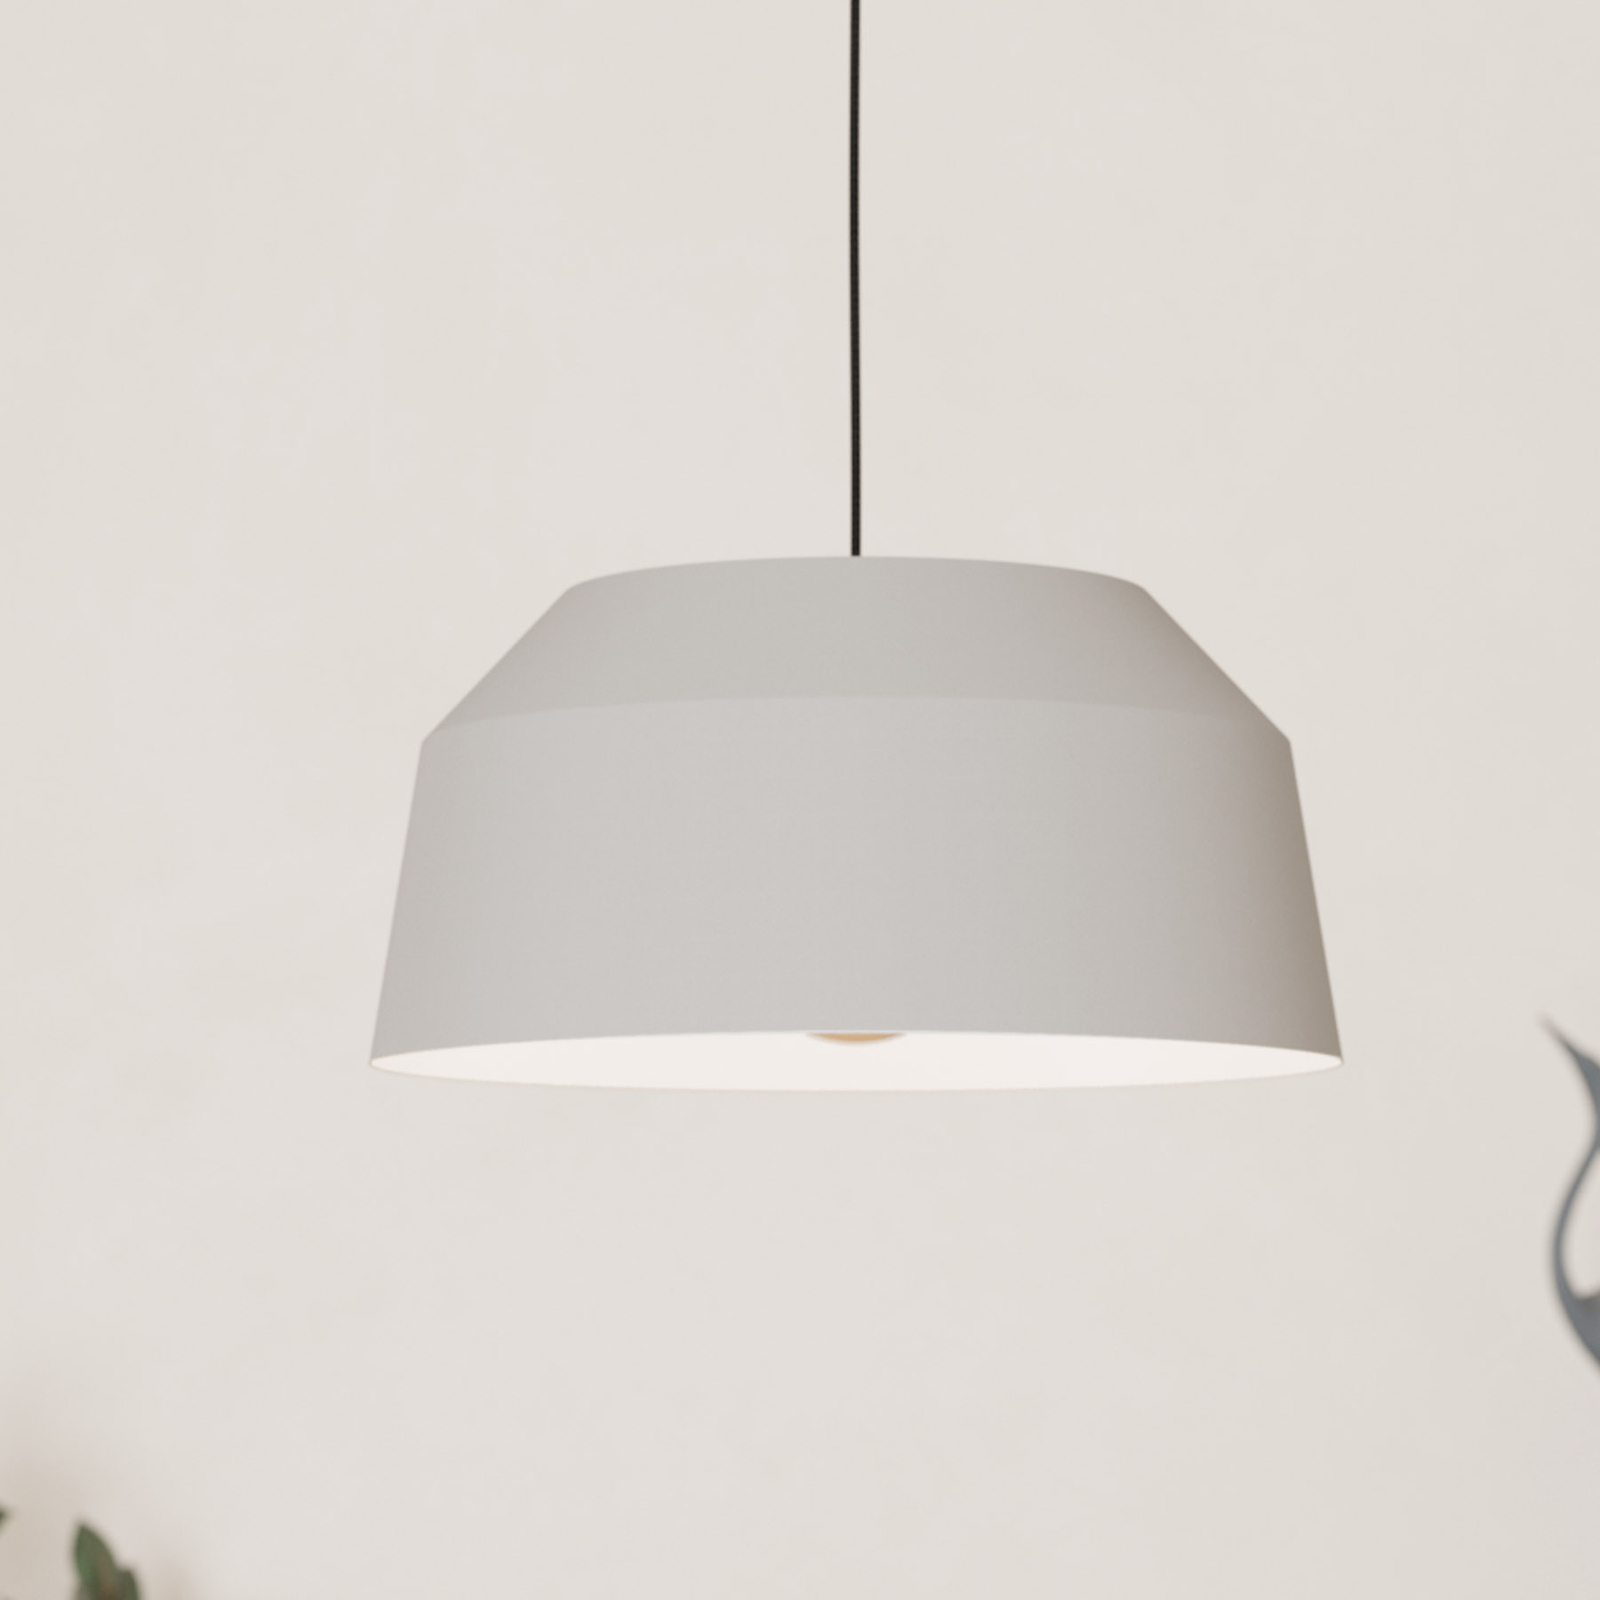 Contrisa pendellampa i grått, enkel belysning, Ø 38 cm